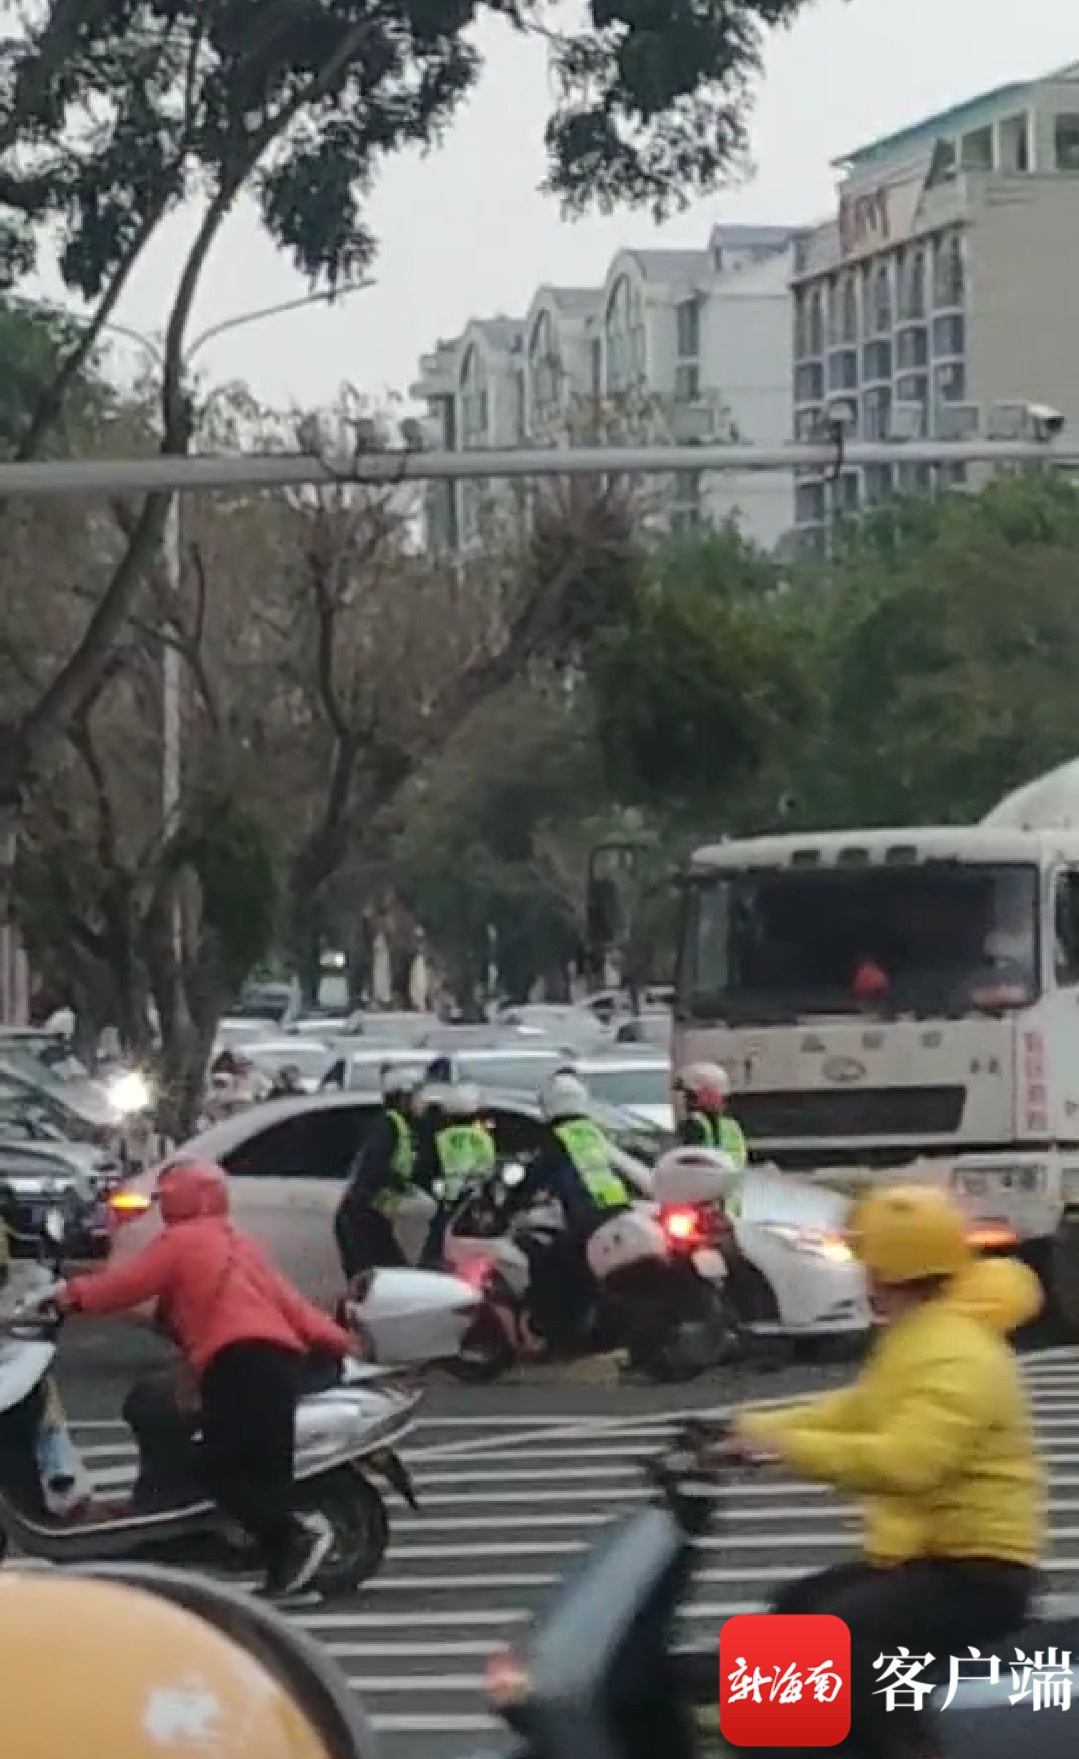 椰视频 | 琼海一轿车在斑马线上反复进退 多名交警尝试拦截未果